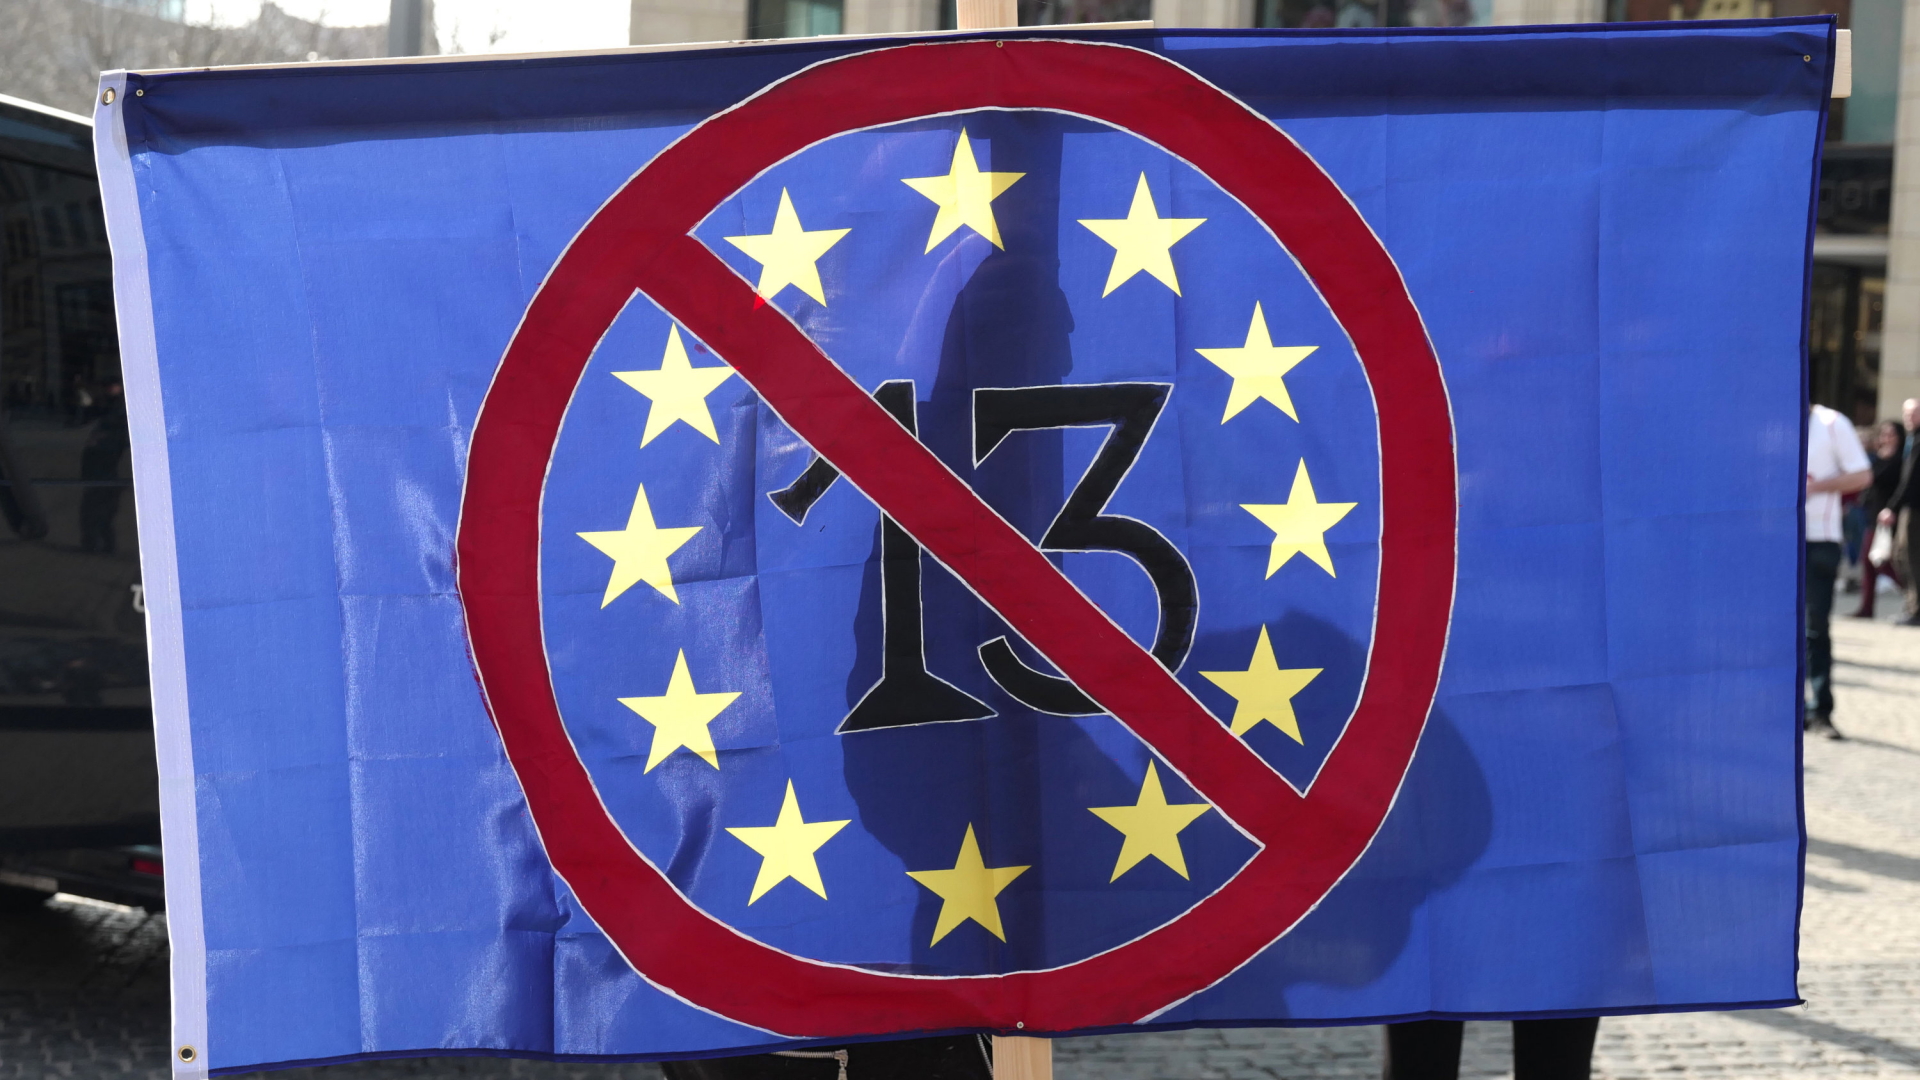 Symbolisch für den Protest gegen den Artikel 13 der EU-Urheberrechtsreform ist auf einer blauen Fahne eine 13 zu sehen, die durchgestrichen ist. | dpa